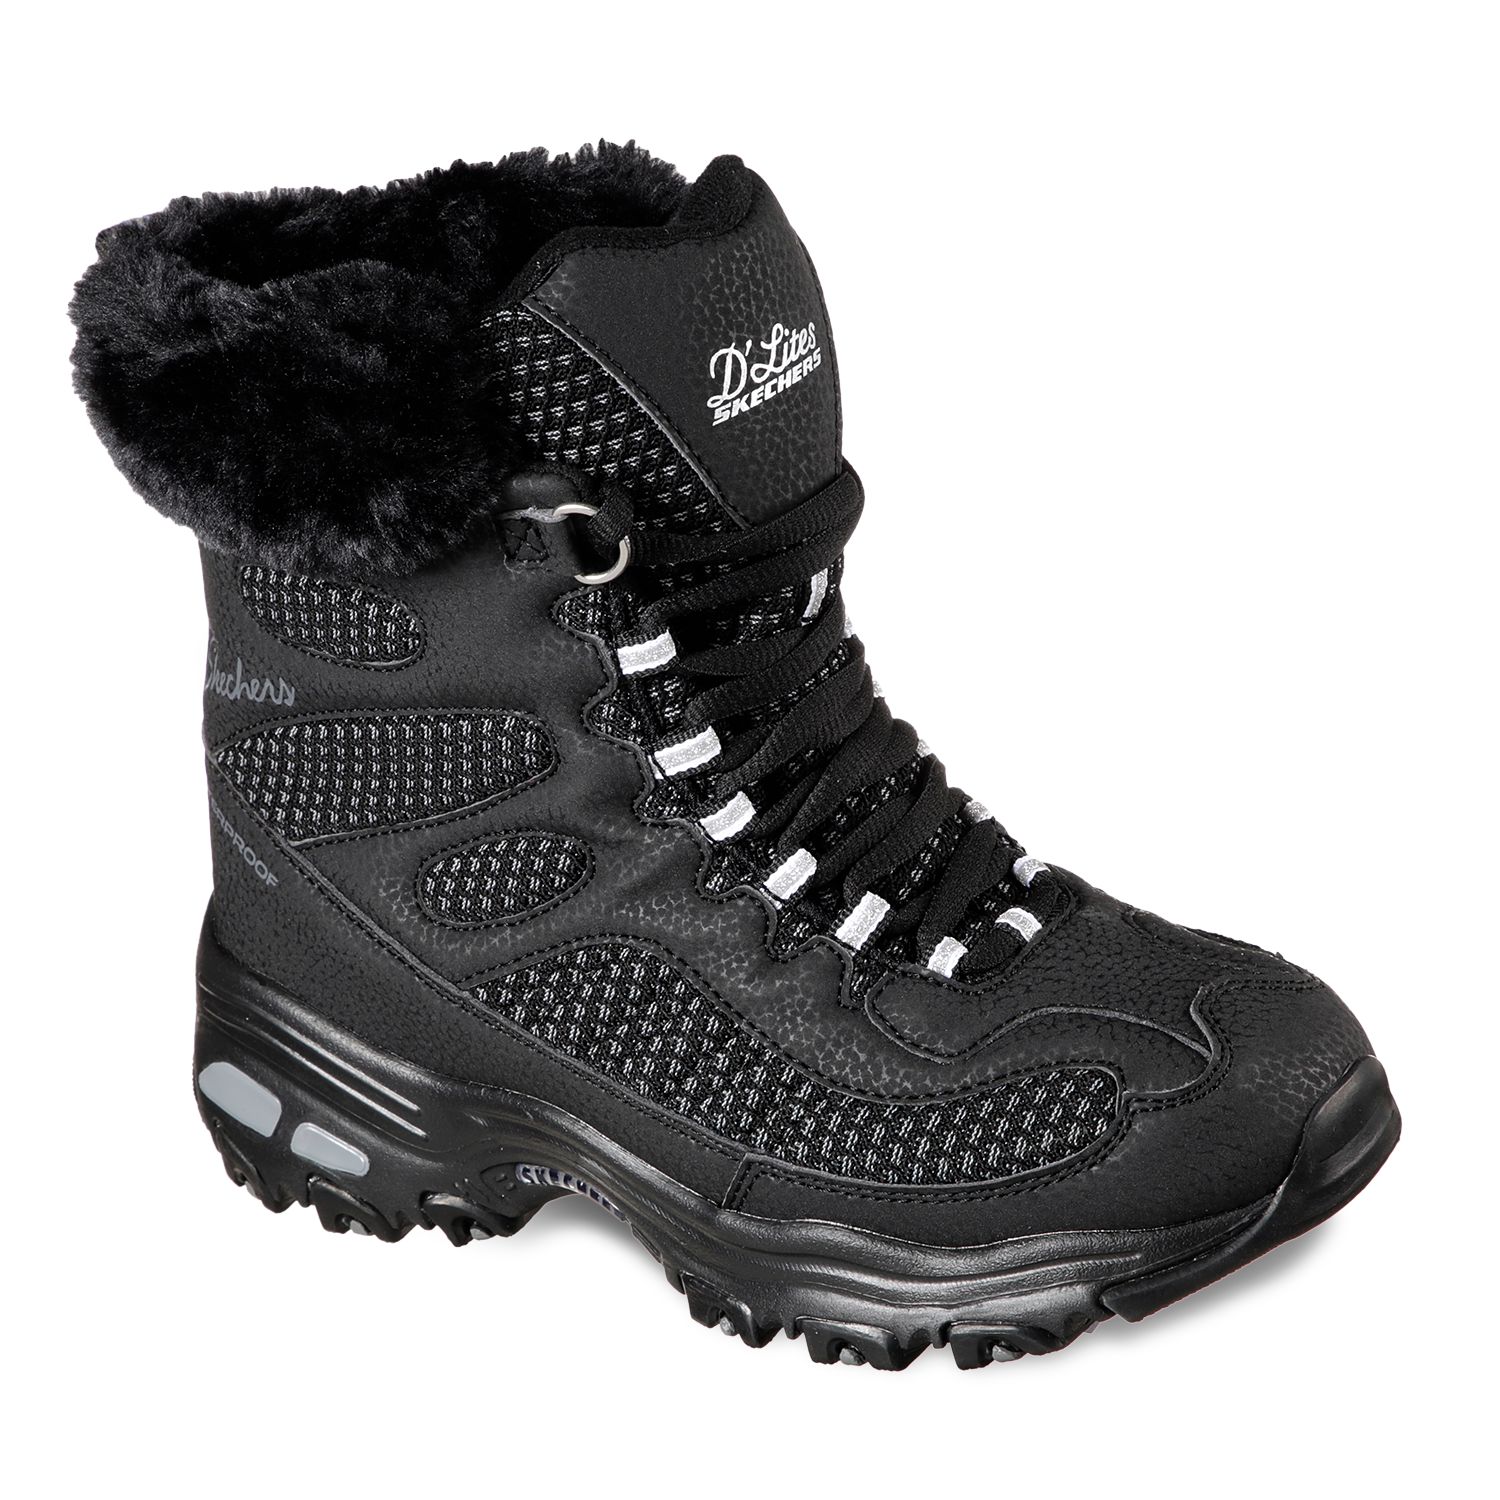 skechers knee high winter boots